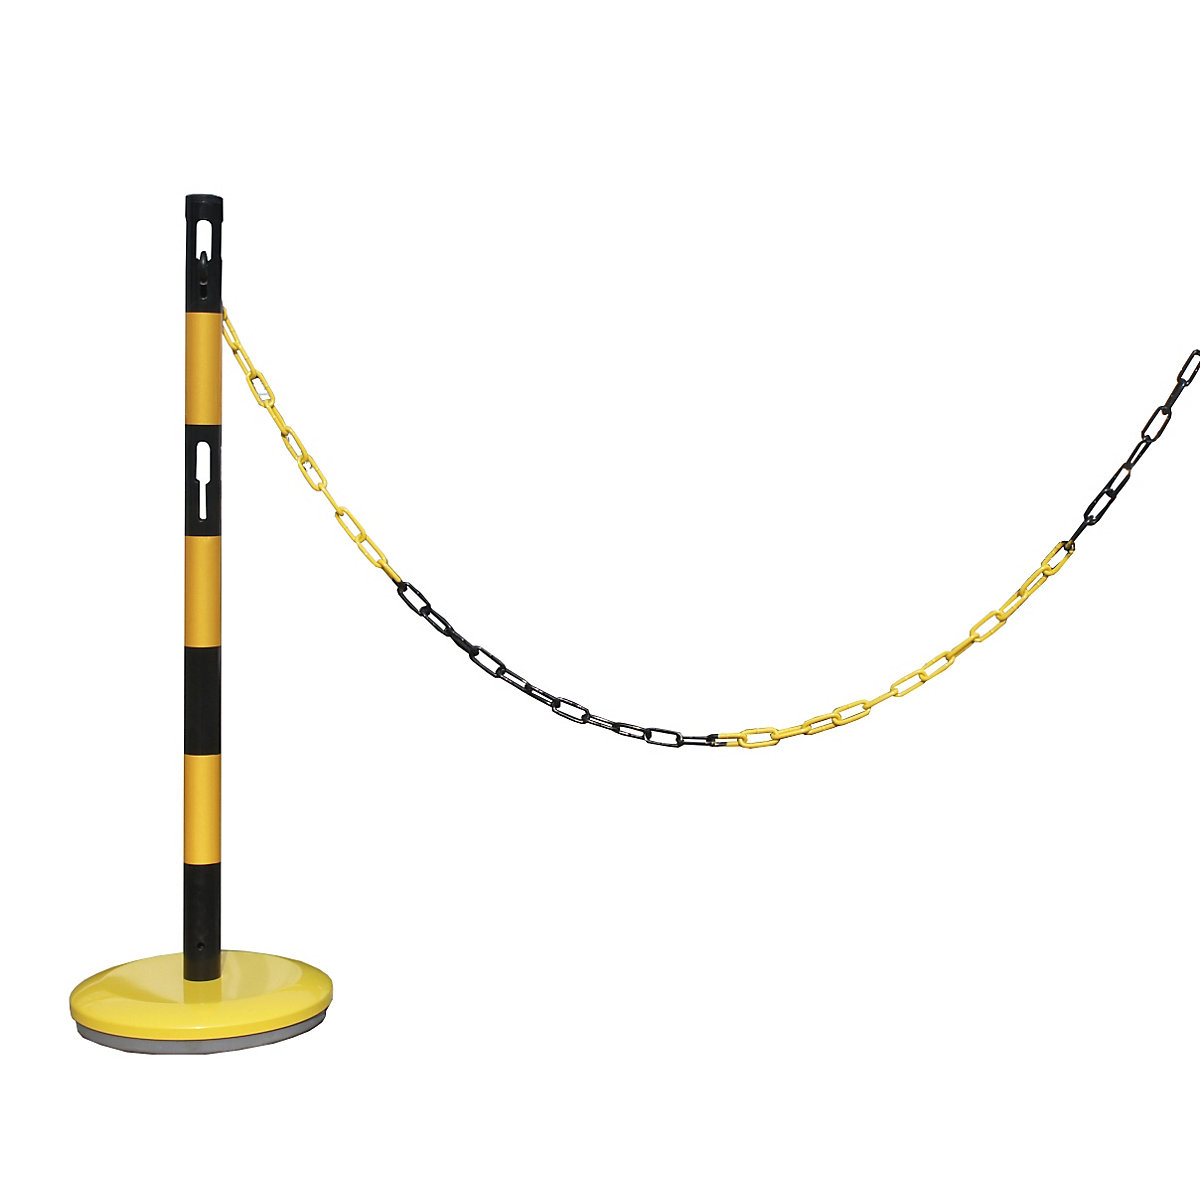 Aanbouwset voor afzetpalen met ketting – VISO, 1 palen, ketting 2,5 m, geel/zwart-3